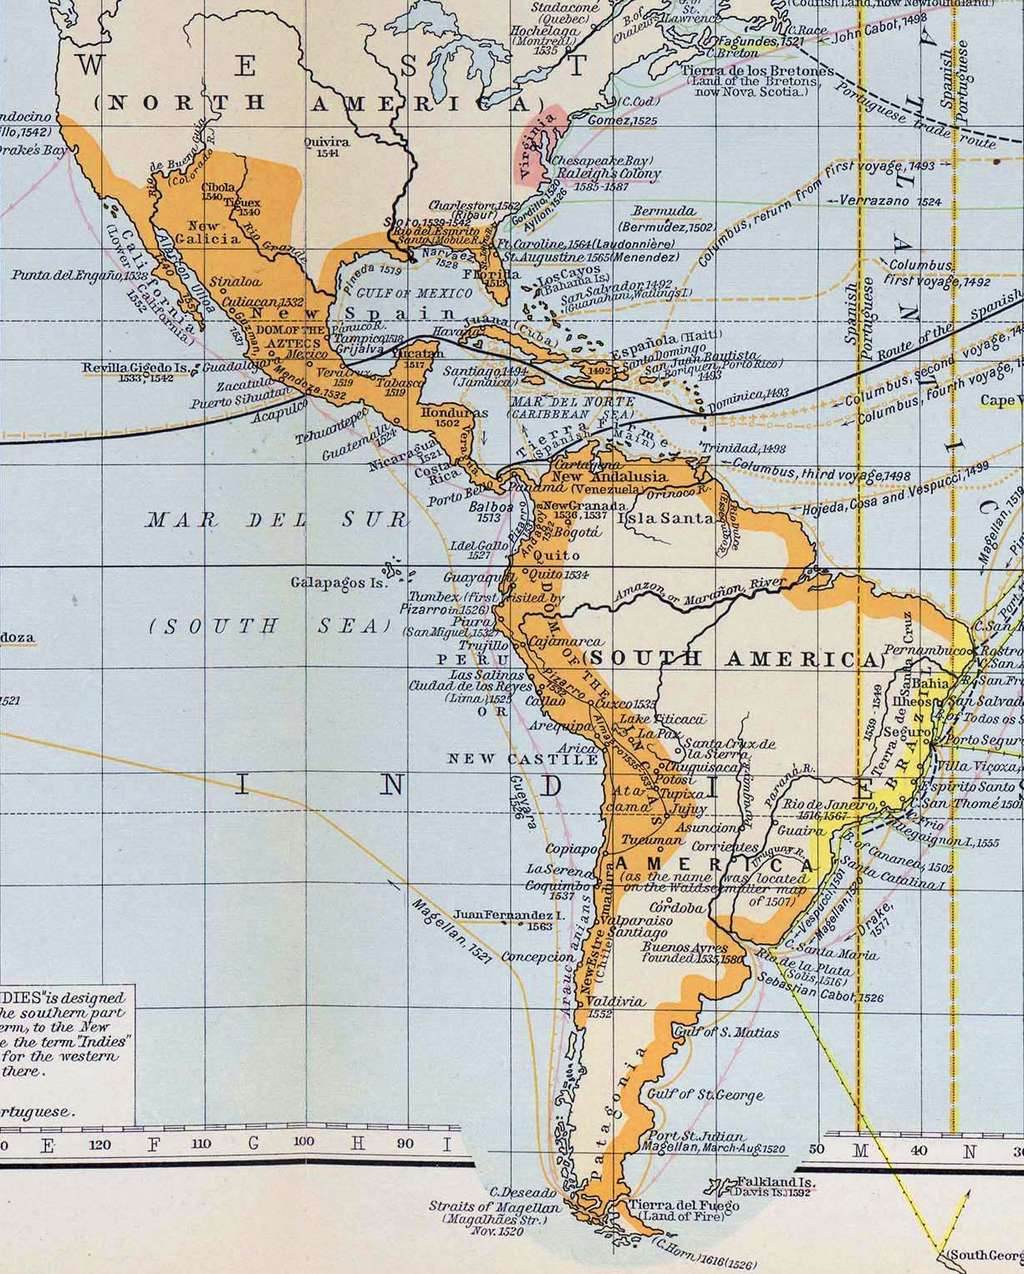 Agrandissement concernant l'Amérique espagnole, extrait de la « Cartographie des grandes découvertes entre 1360 et 1600 ». © 2019, Le-Cartographe.net